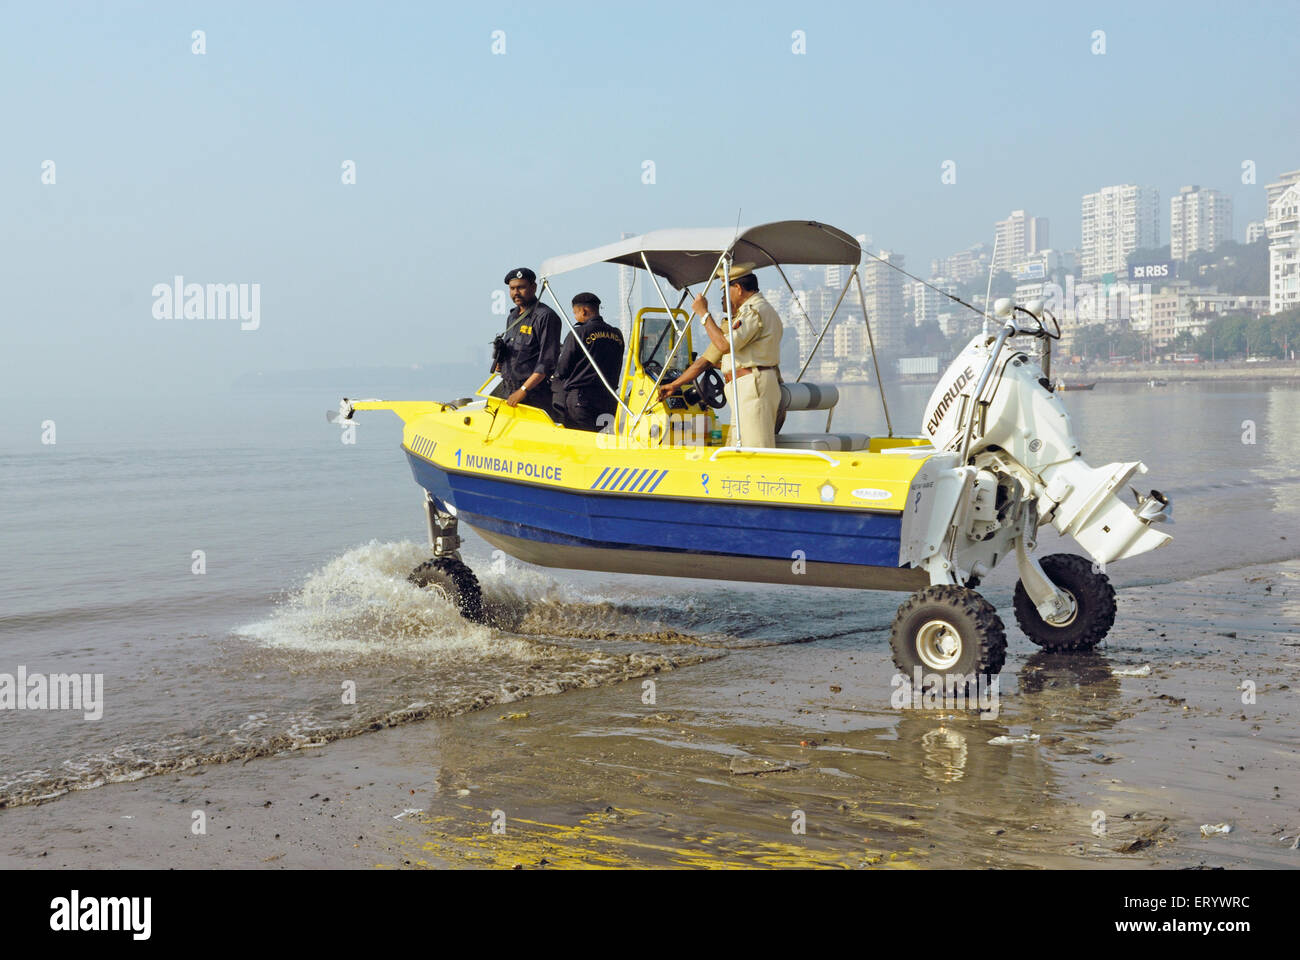 Anfibi , barca anfibia veicolo , Mumbai polizia commando , Chowpatty spiaggia , Marine Drive ; Bombay ; Mumbai ; Maharashtra ; India , asia Foto Stock